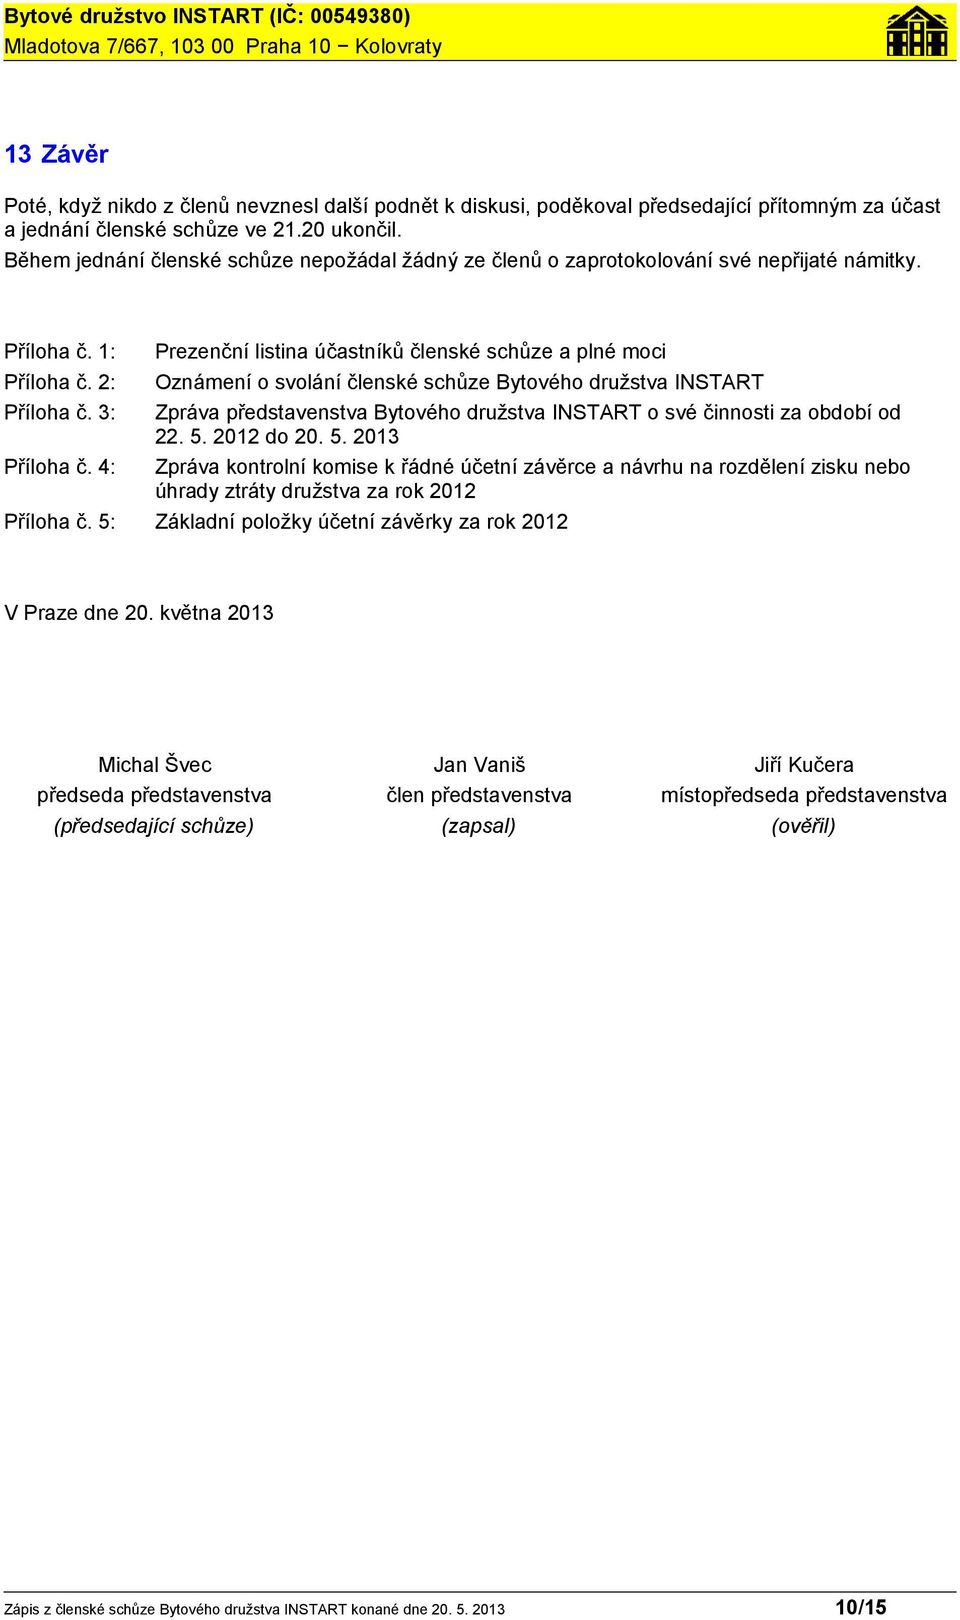 2: Oznámení o svolání členské schůze Bytového družstva INSTART Příloha č. 3: Zpráva představenstva Bytového družstva INSTART o své činnosti za období od 22. 5. 2012 do 20. 5. 2013 Příloha č.